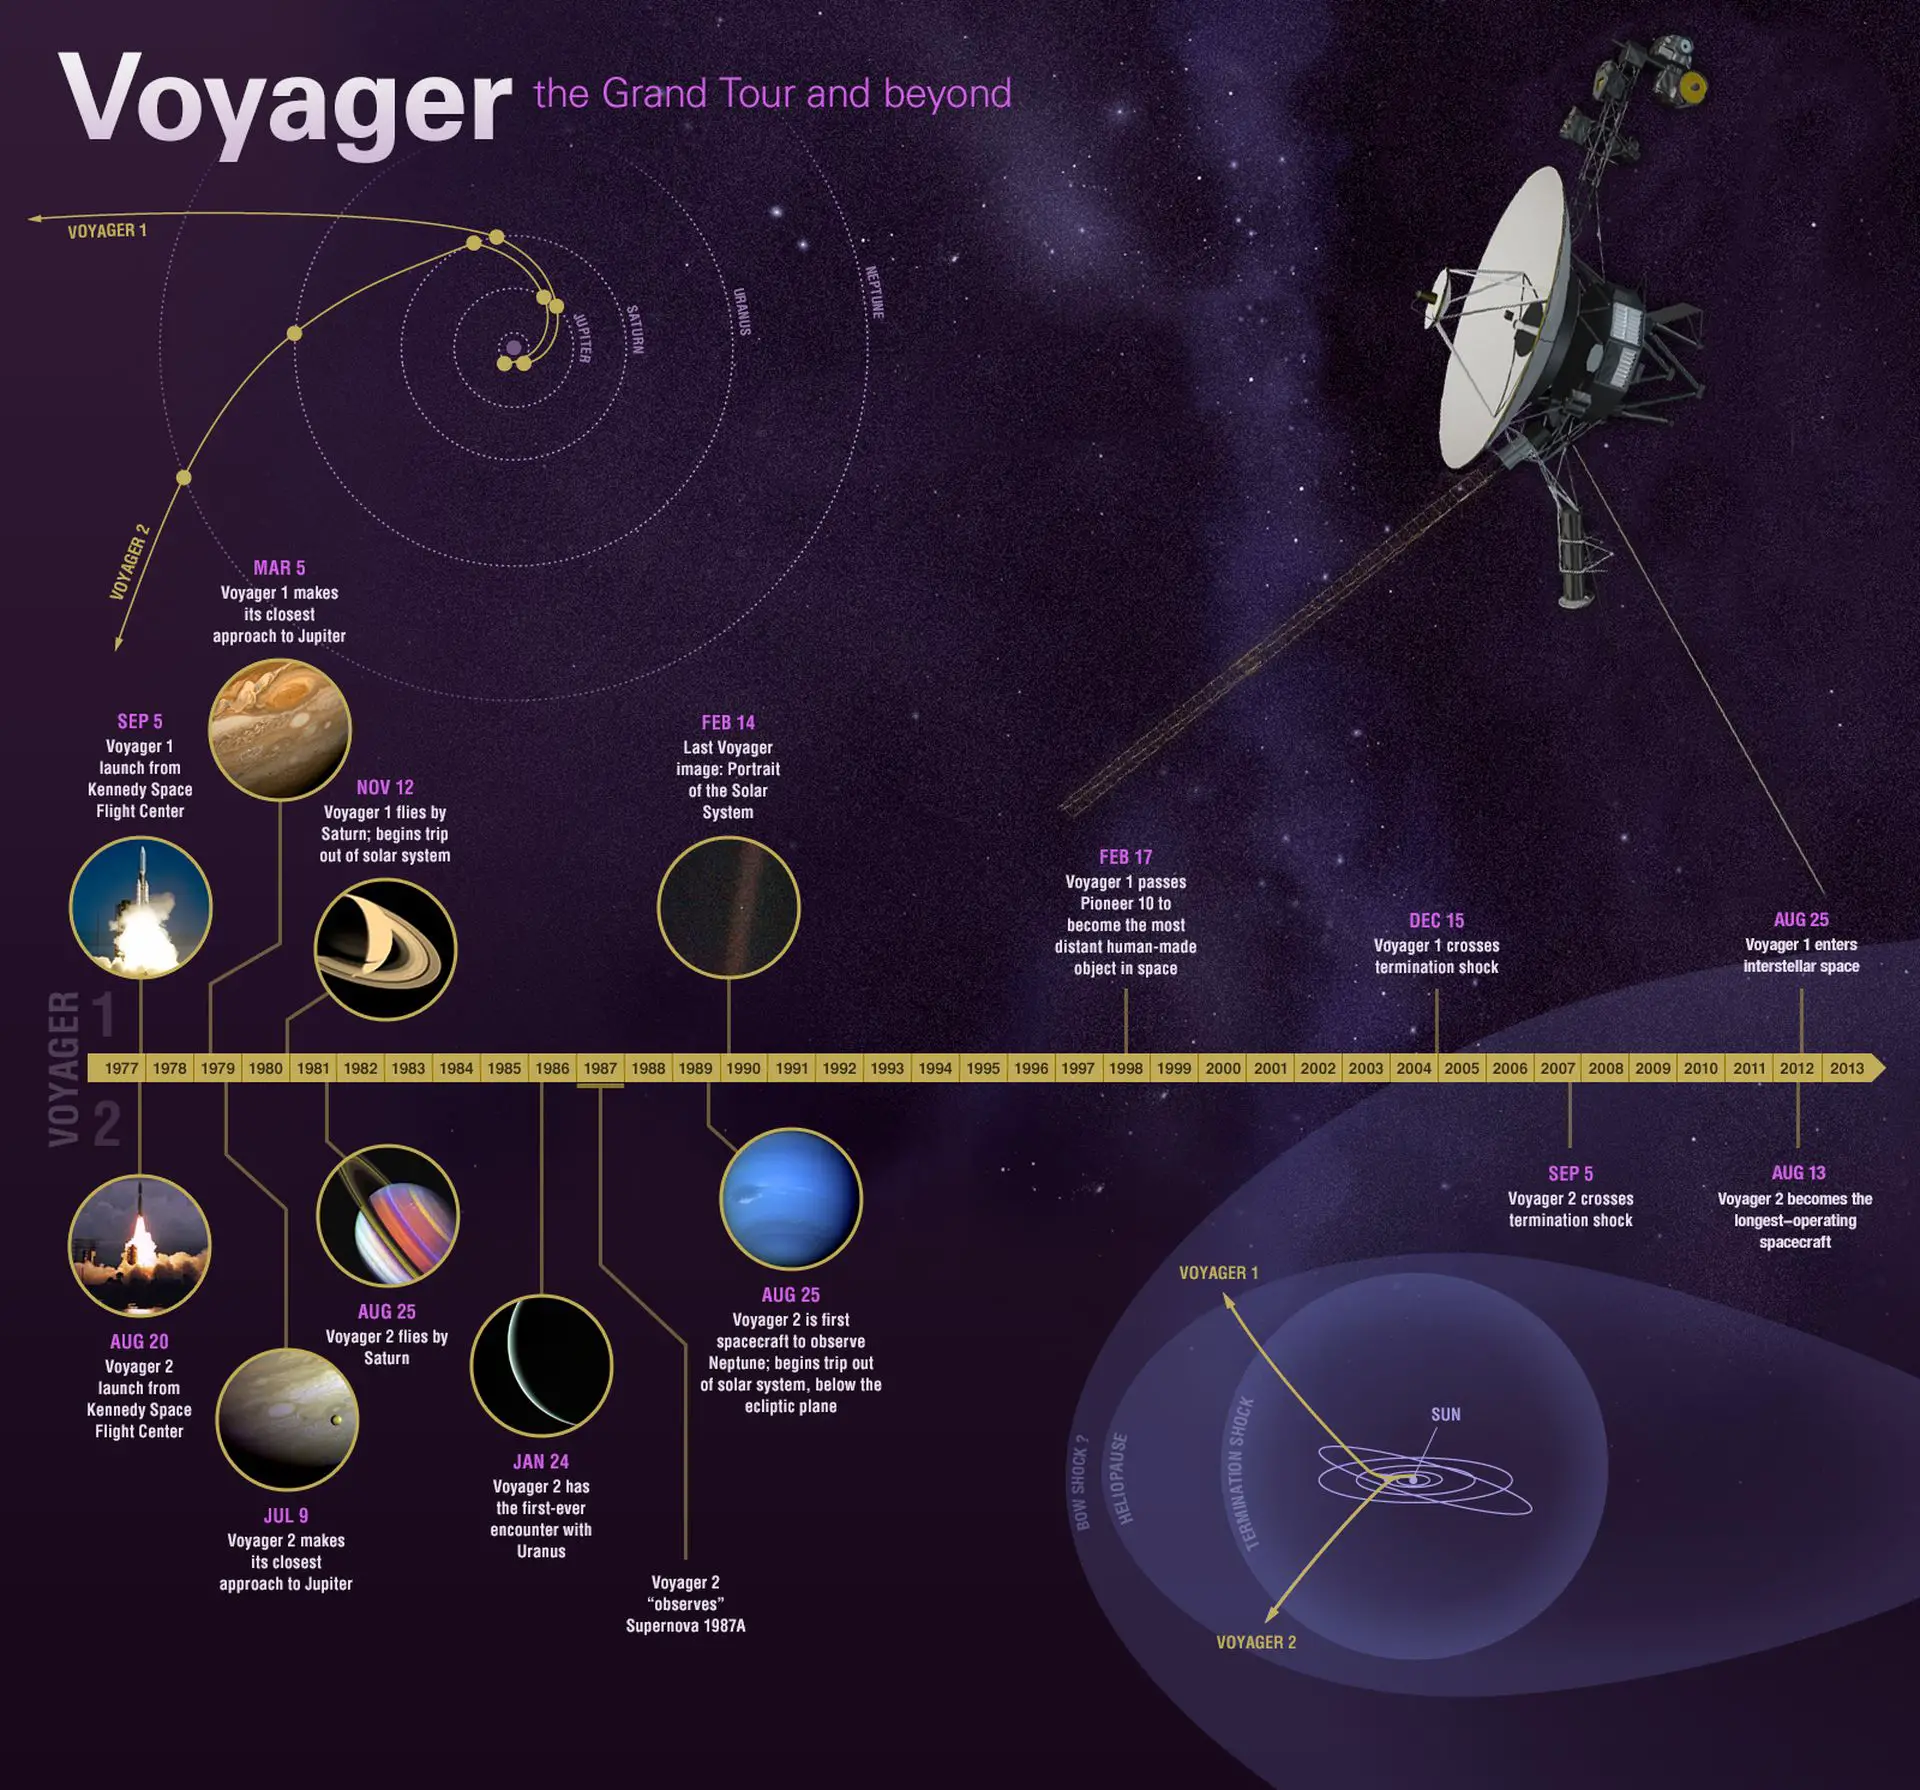 Voyager 2 ile iletişim tamamen kesildi